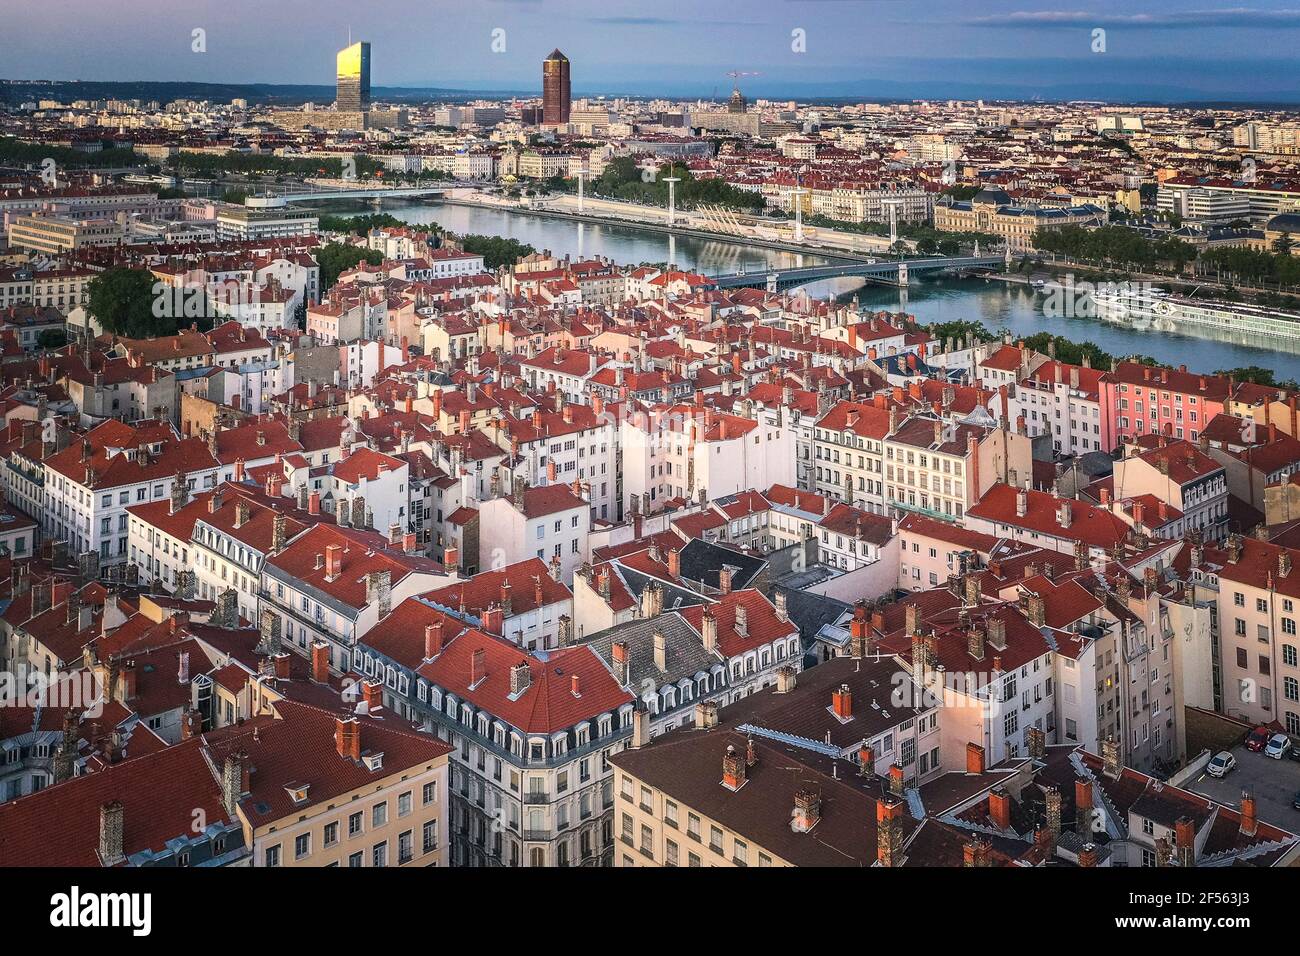 France, Auvergne-Rhône-Alpes, Lyon, vue aérienne du quartier résidentiel de la ville au crépuscule Banque D'Images